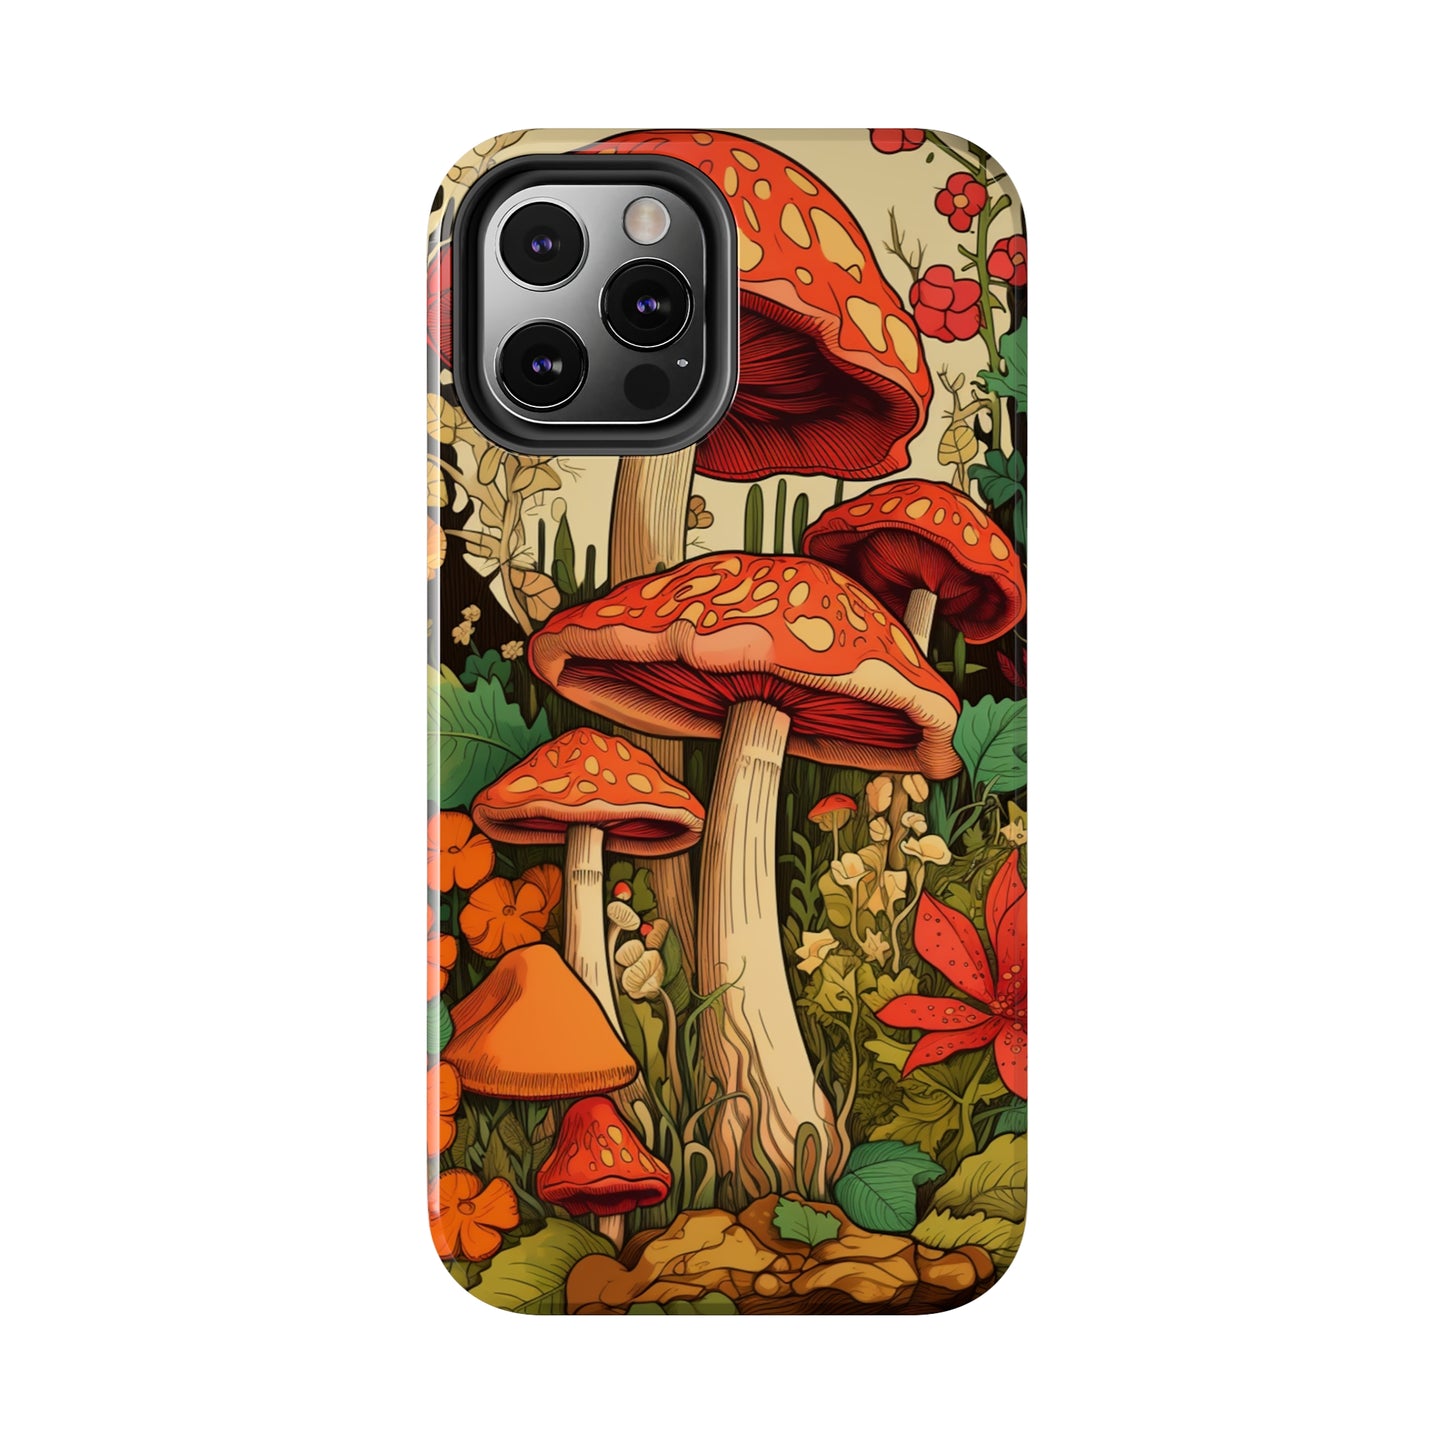 Nostalgic Mushroom iPhone 11 Design